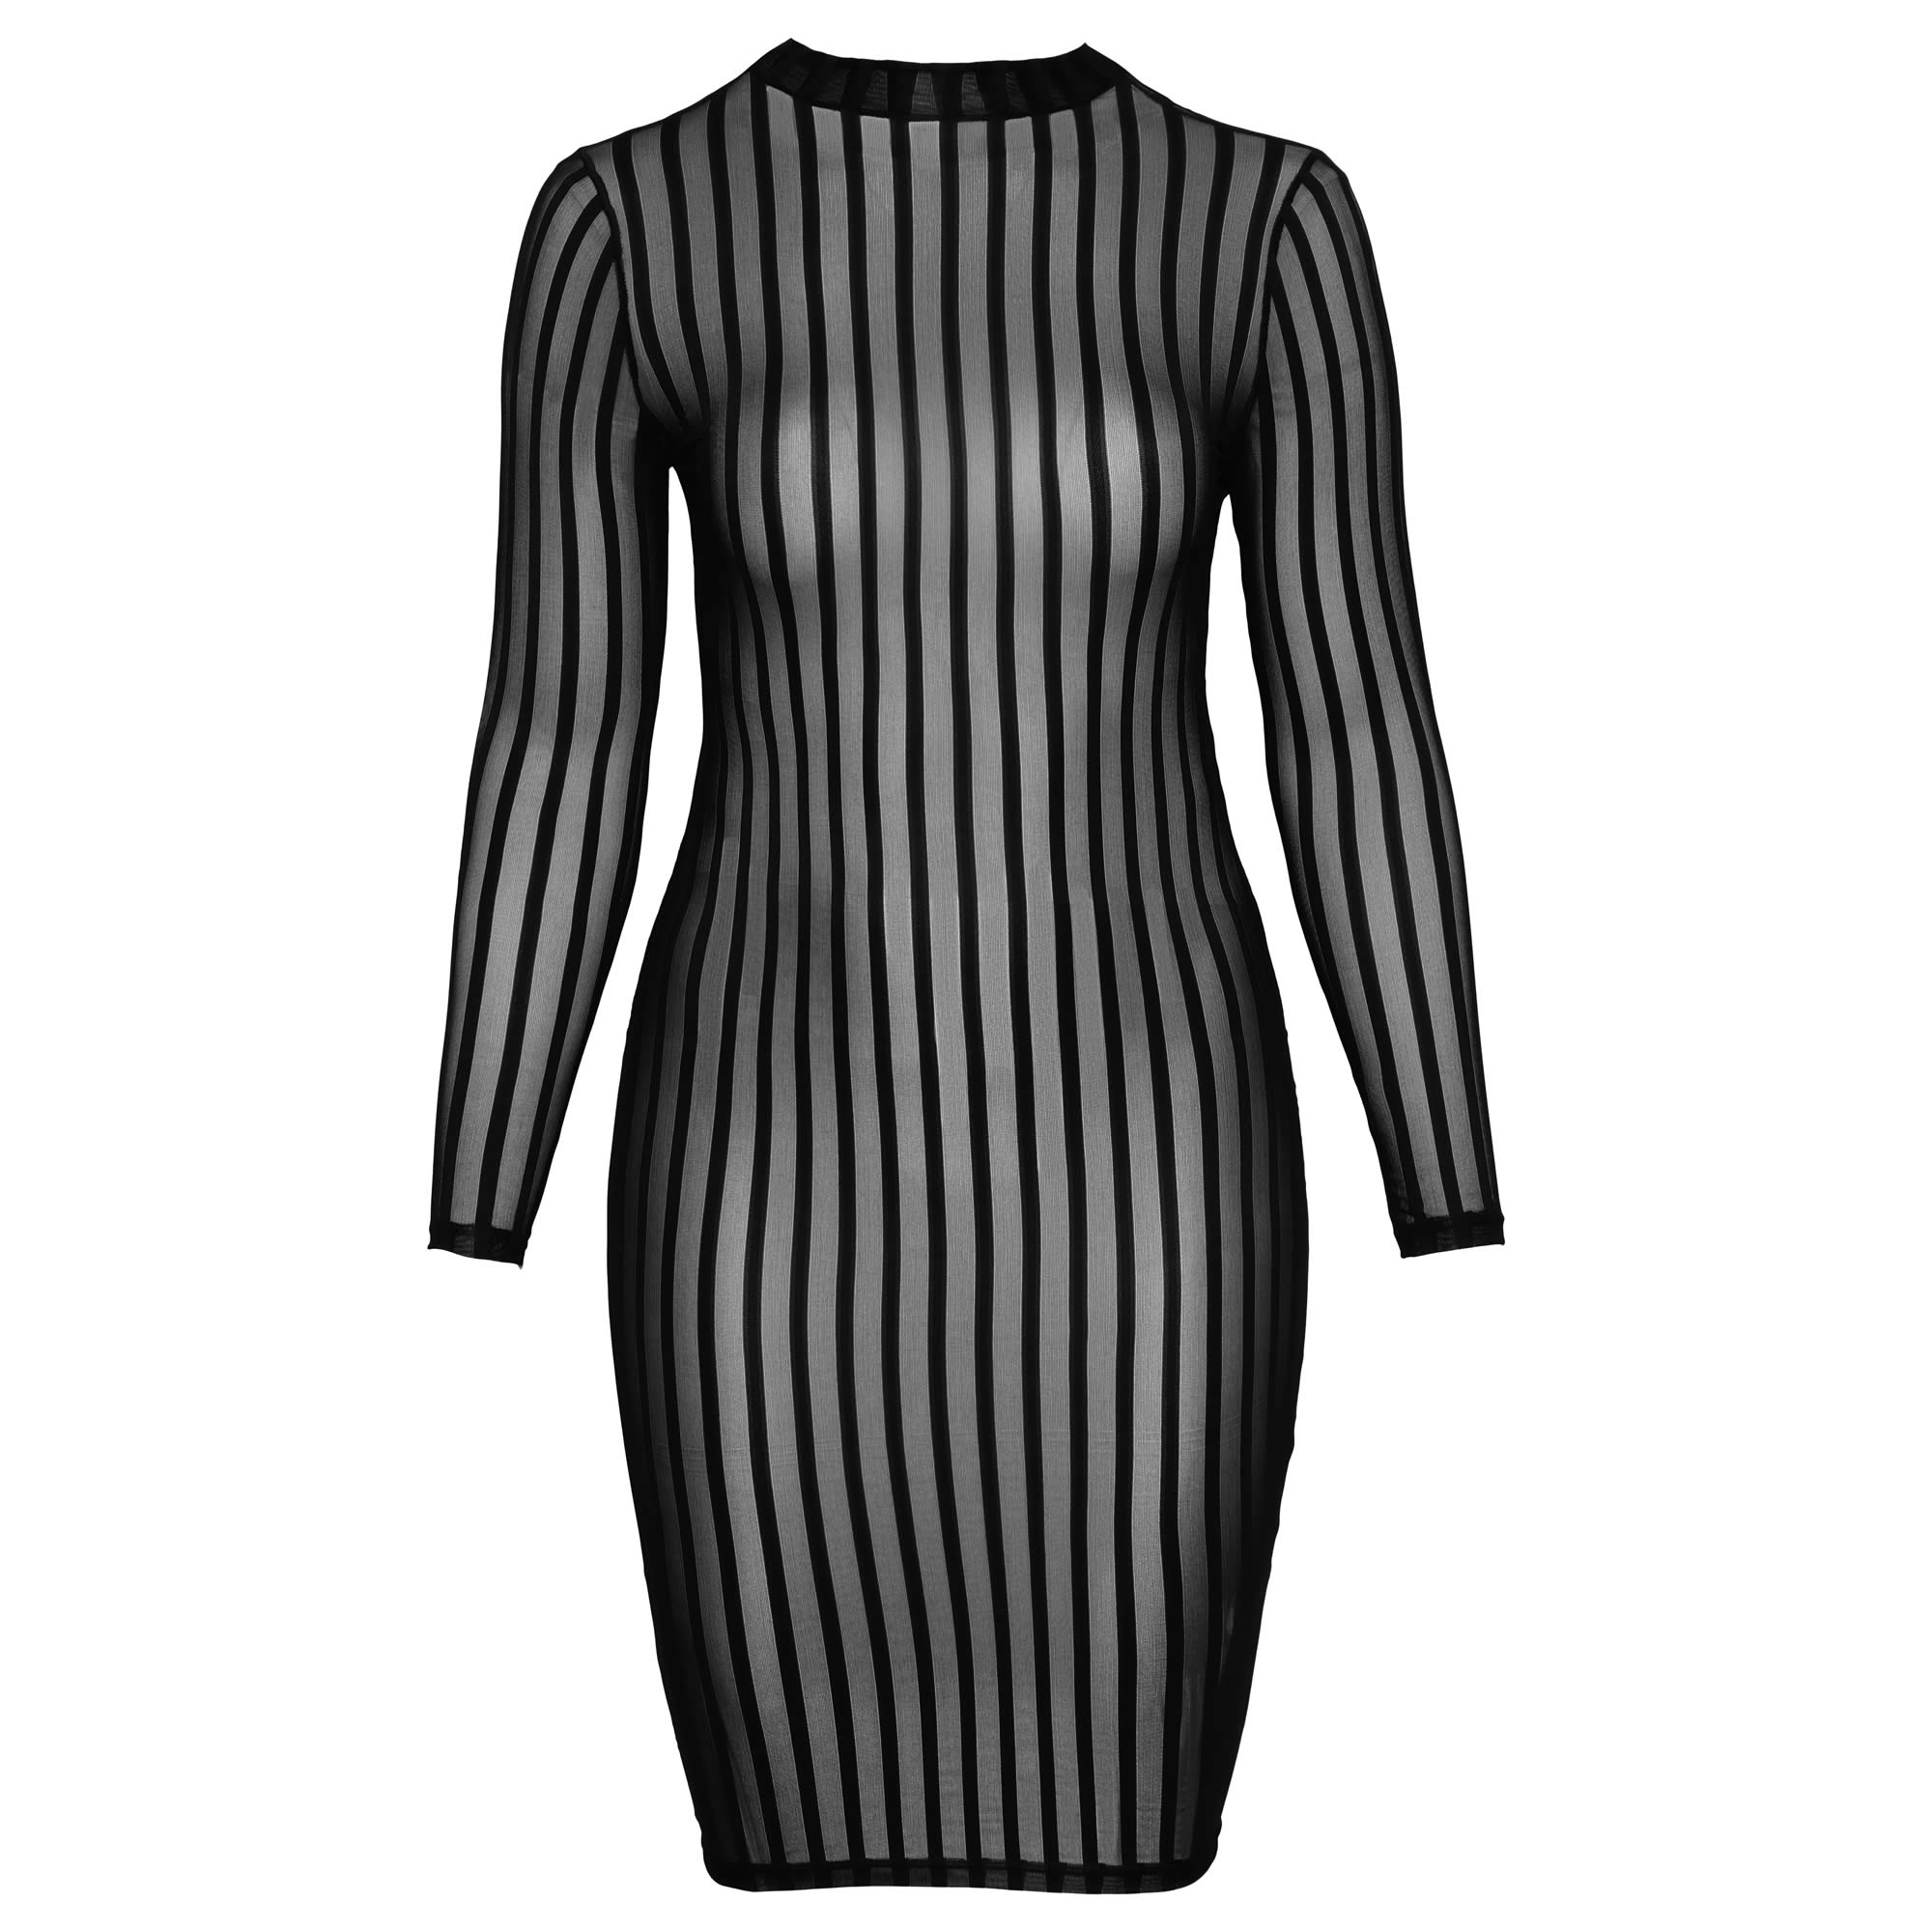 Noir Transparent Plus Size Dress with Stripes